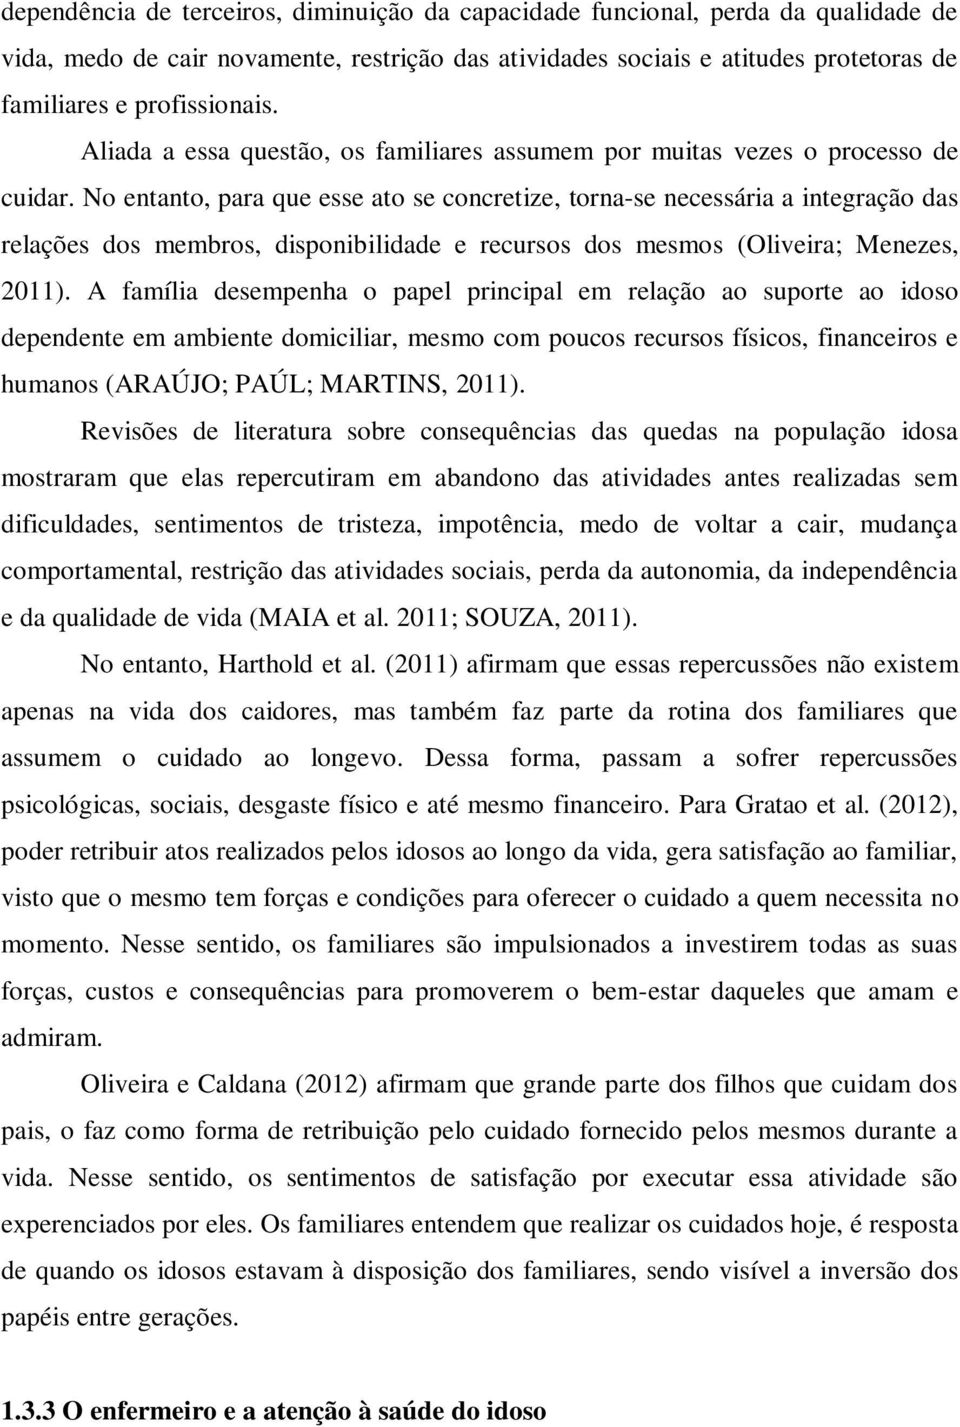 No entanto, para que esse ato se concretize, torna-se necessária a integração das relações dos membros, disponibilidade e recursos dos mesmos (Oliveira; Menezes, 2011).